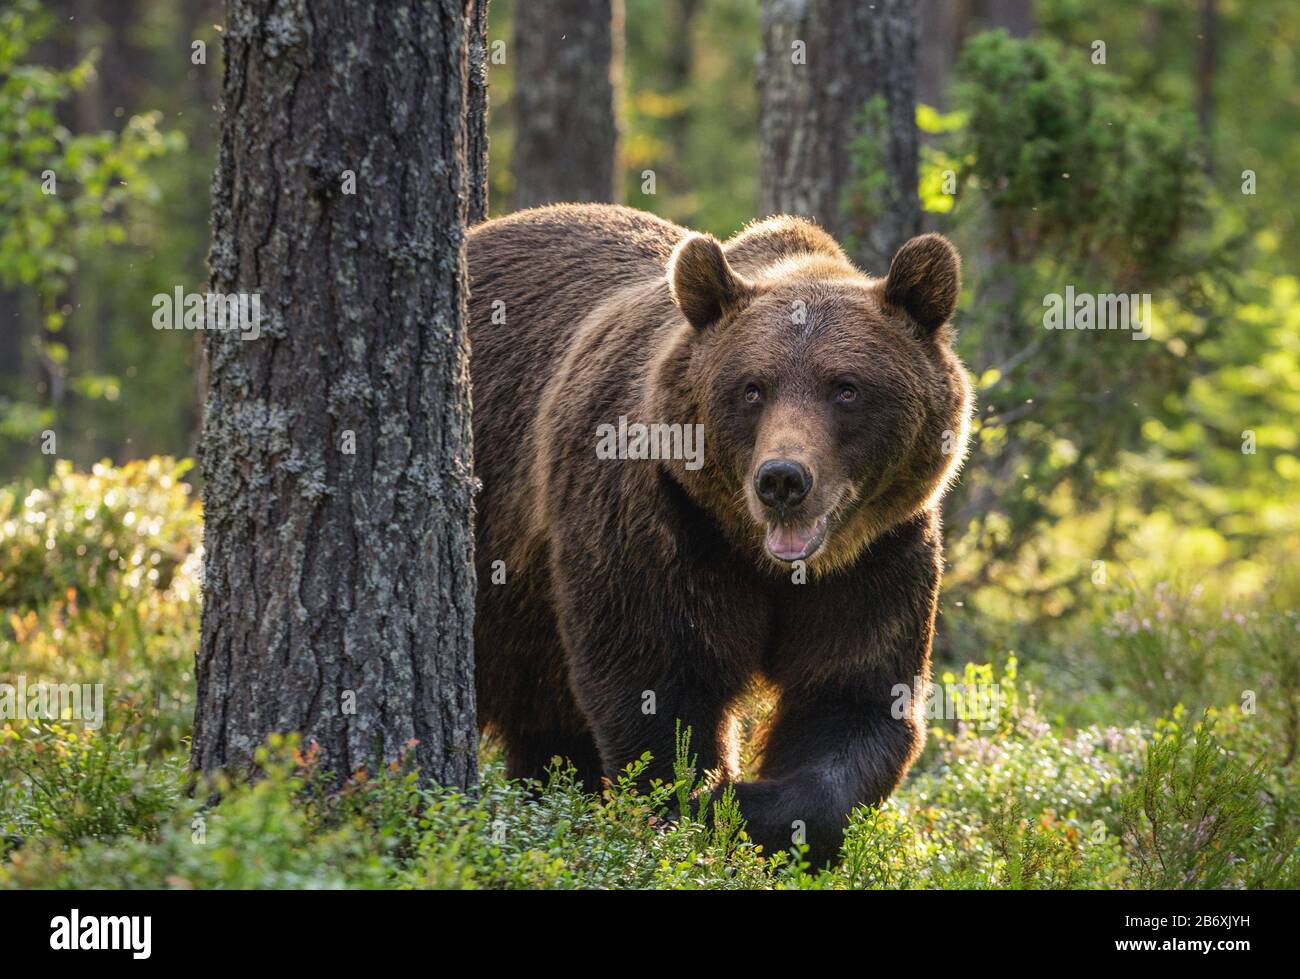 Mâle adulte d'ours brun dans la forêt de pins. Nom scientifique: Ursus arctos. Habitat naturel. Banque D'Images